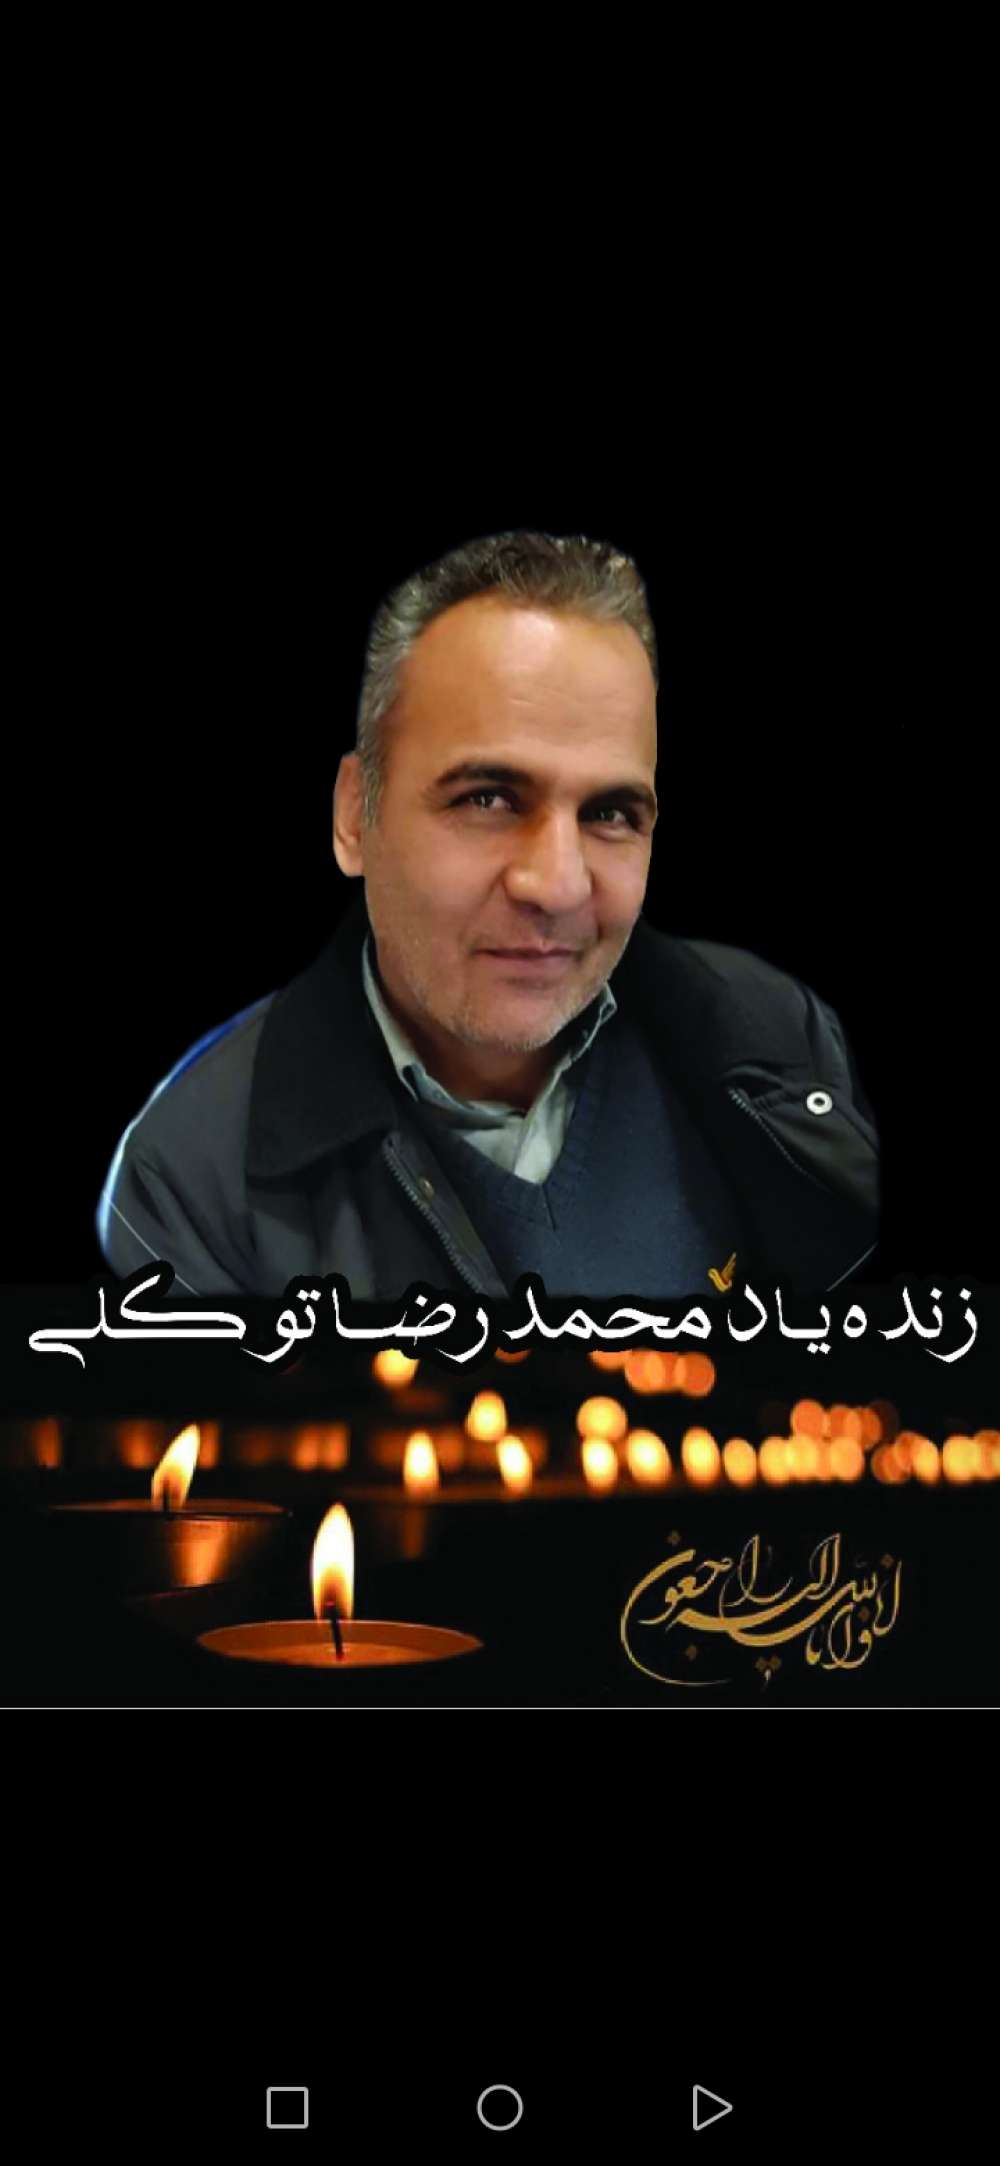 زنده یاد محمد رضا توکلی